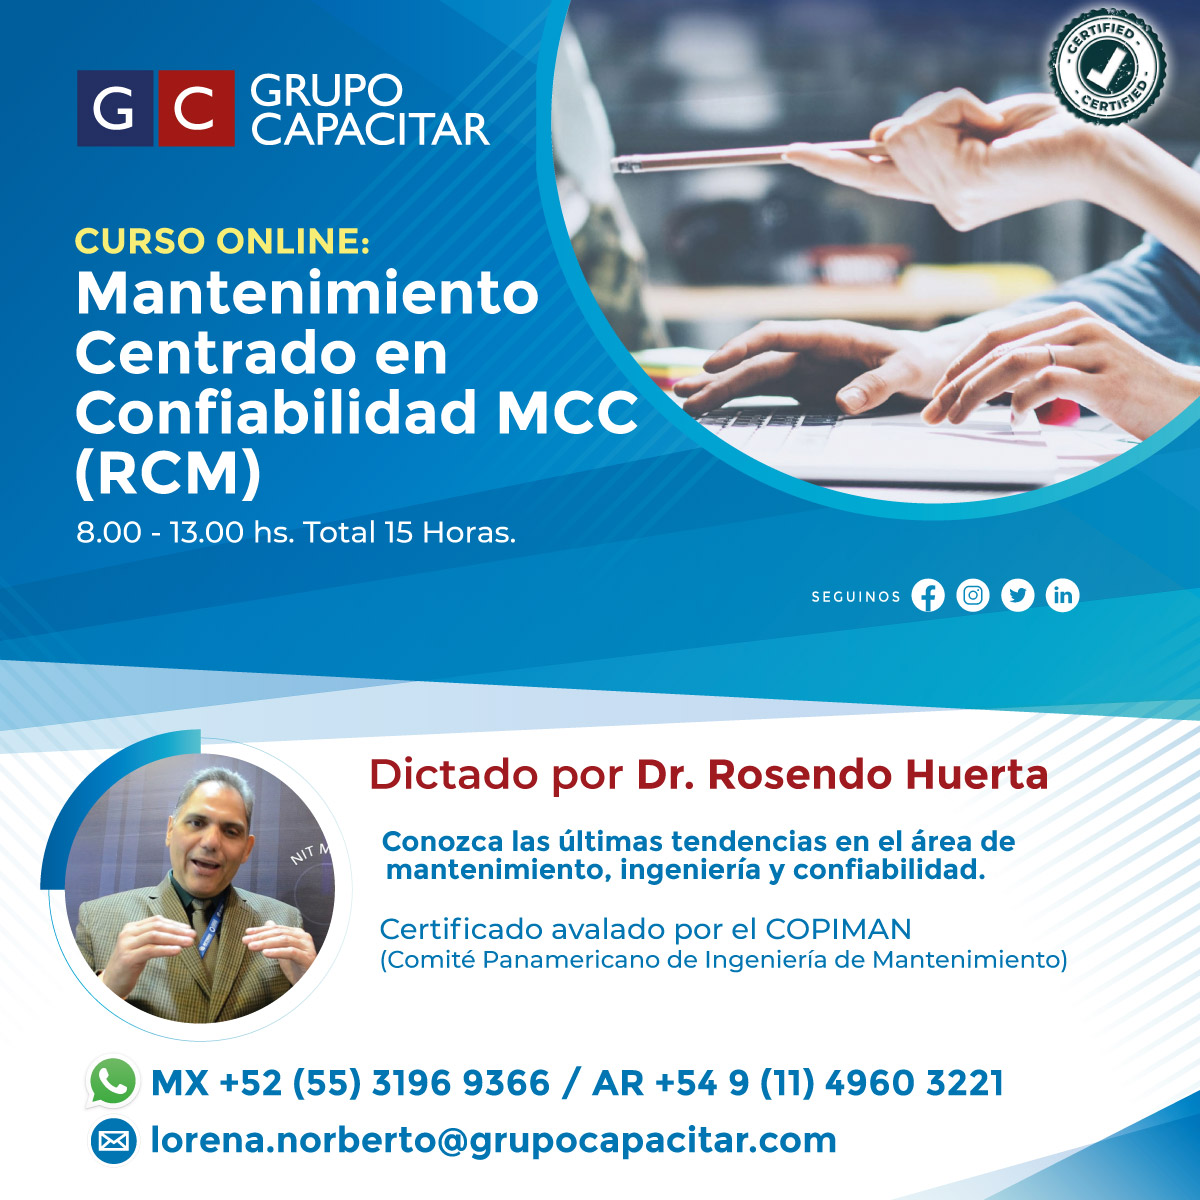 CURSO ONLINE De la metodología: Mantenimiento Centrado en Confiabilidad MCC (RCM)  Confiabilidad de equipos